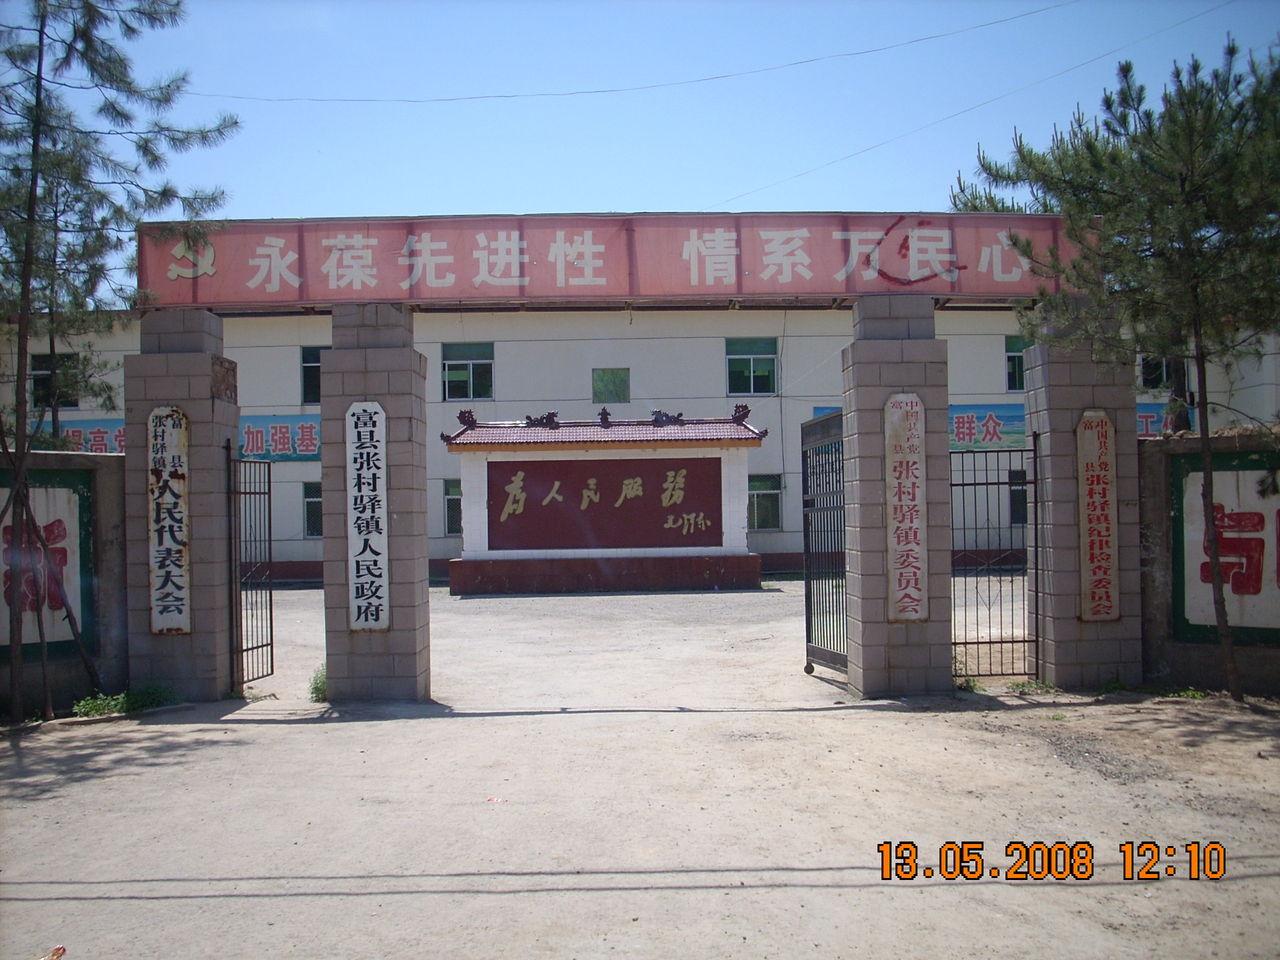 张村驿镇位于富县县域西南,古代为传送军书公文的驿站,总面积330平方